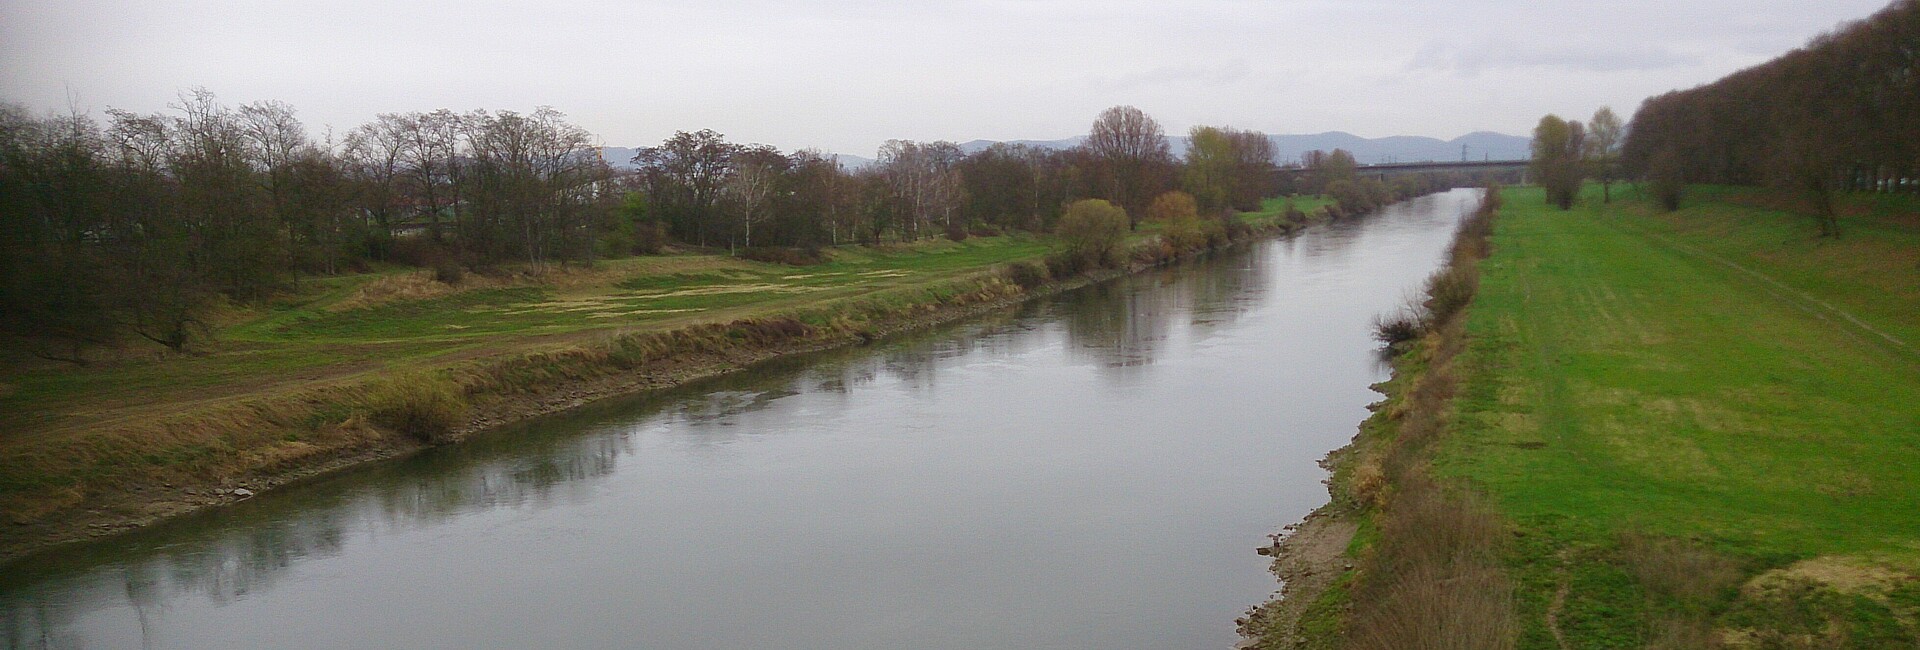 Neckar bei Neuostheim; eintönige geradlinige Uferstruktur